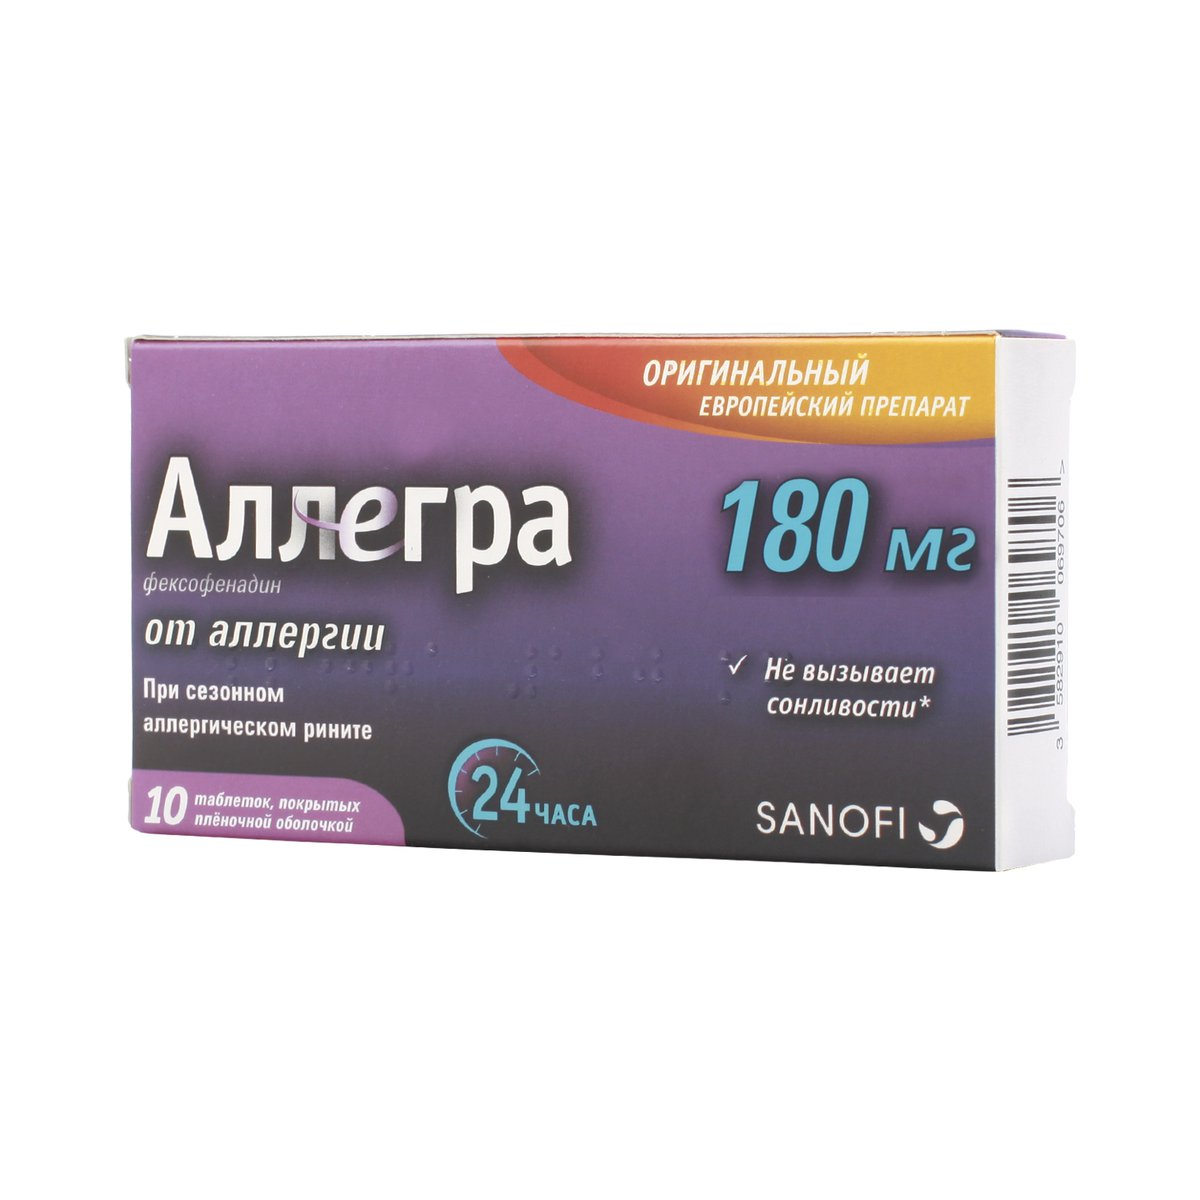 Аллегра (таблетки, 10 шт, 180 мг, для приема внутрь) - цена,  .